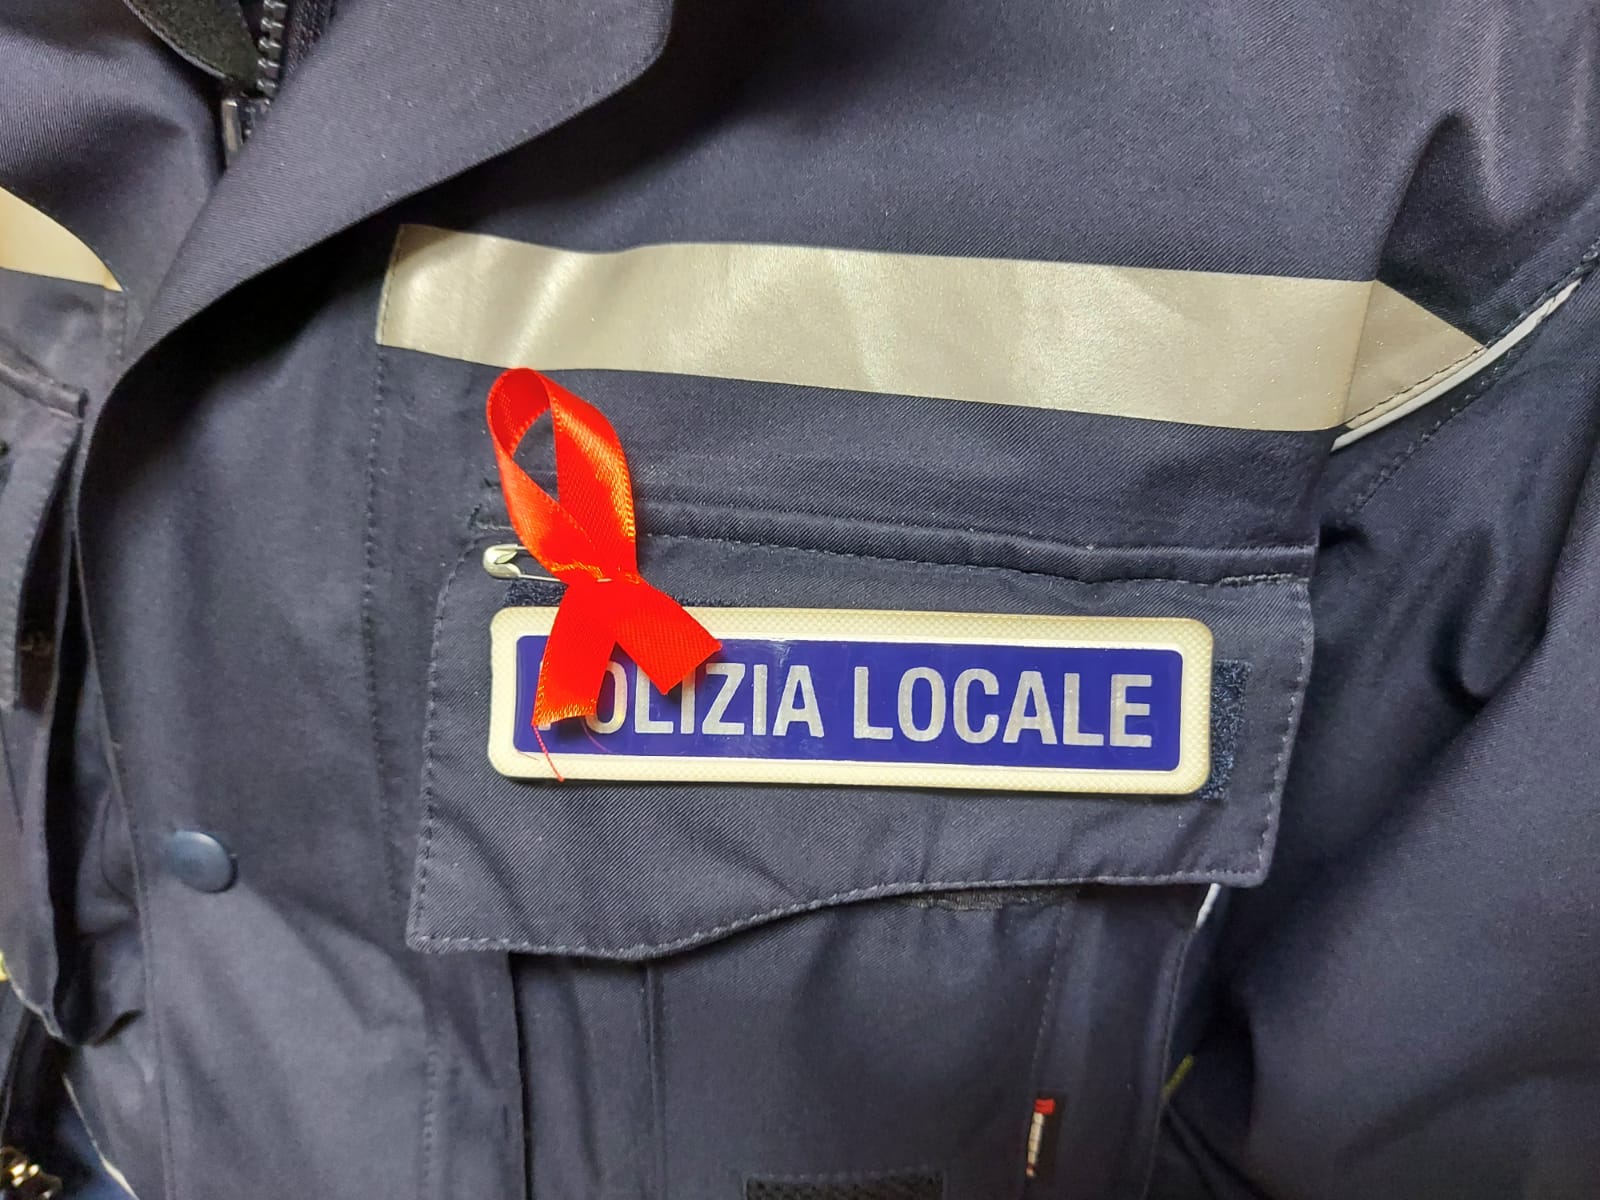 Fiocco rosso anche sulle divise della polizia locale di Foggia.